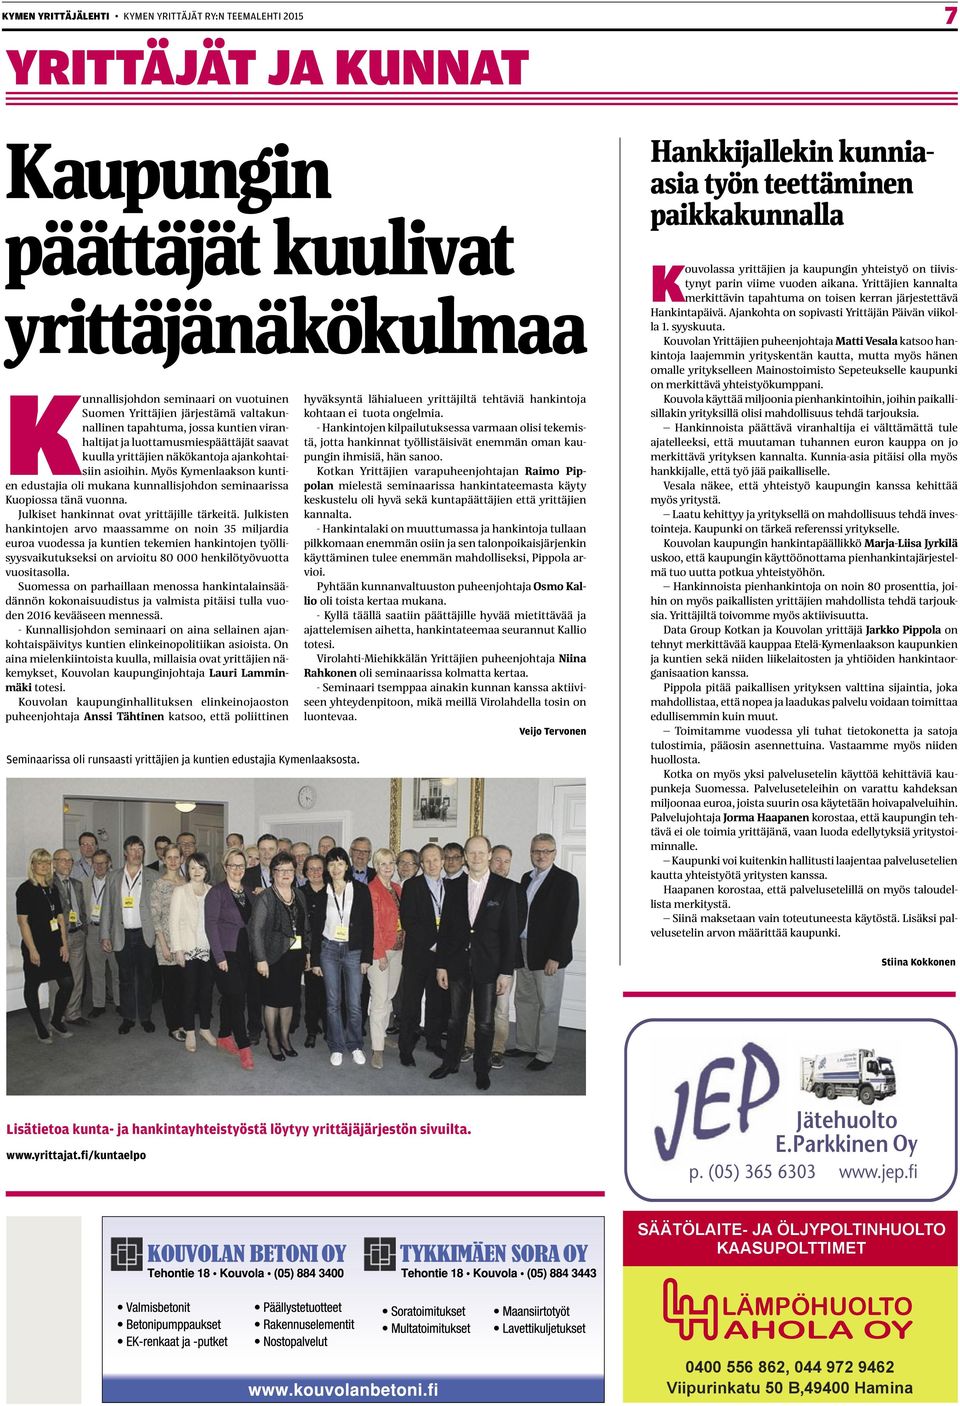 Myös Kymenlaakson kuntien edustajia oli mukana kunnallisjohdon seminaarissa Kuopiossa tänä vuonna. Julkiset hankinnat ovat yrittäjille tärkeitä.